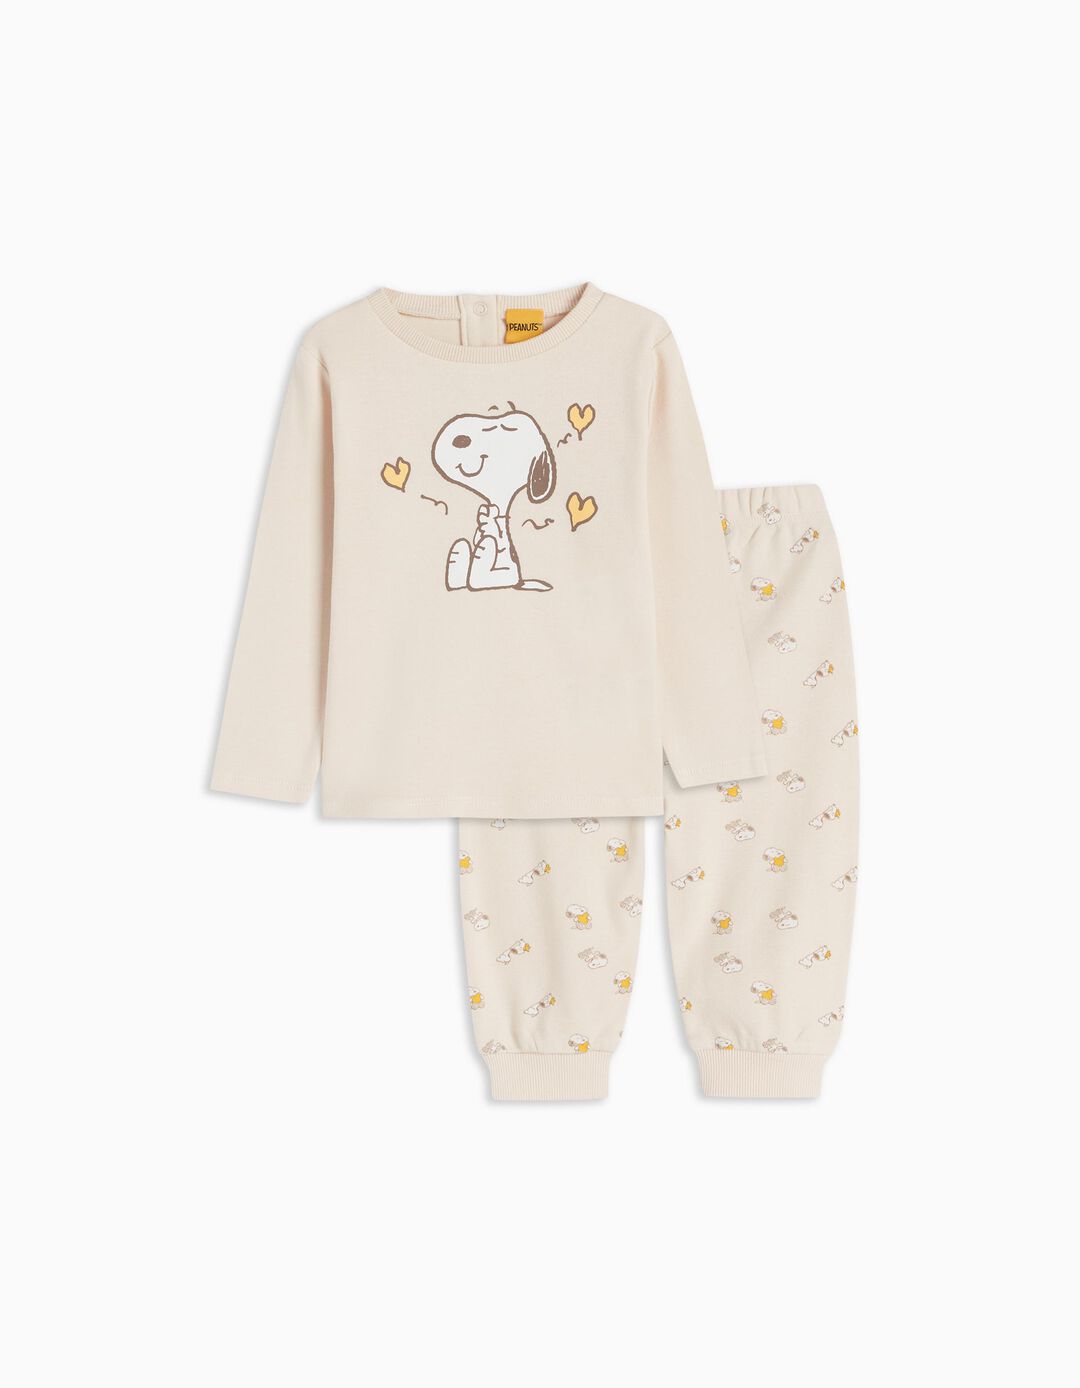 'Snoopy' pajamas, Baby Girl, Light Beige